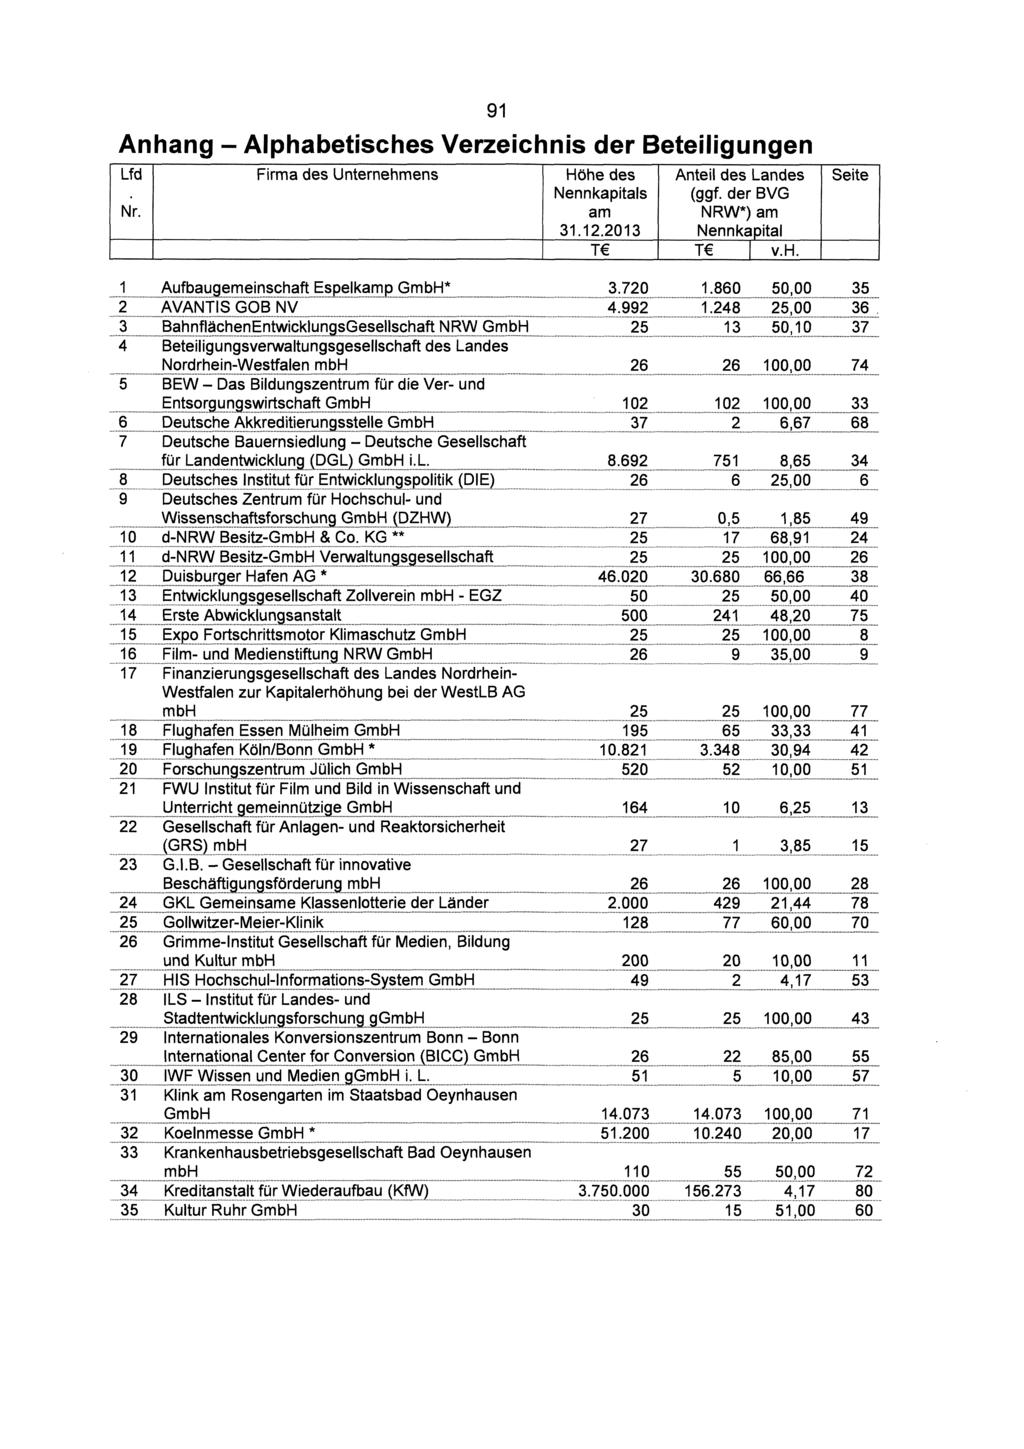 ...... """.... ". "... w...,,,??. Anhang - Alphabetisches Verzeichnis der Lfd Nr. Firma des 91 Höhe des Nennkapitals am 31.12.2013 T Anteil des Landes (ggf. der BVG NRW*) am Nennkapital T I v.h. Seite 1.